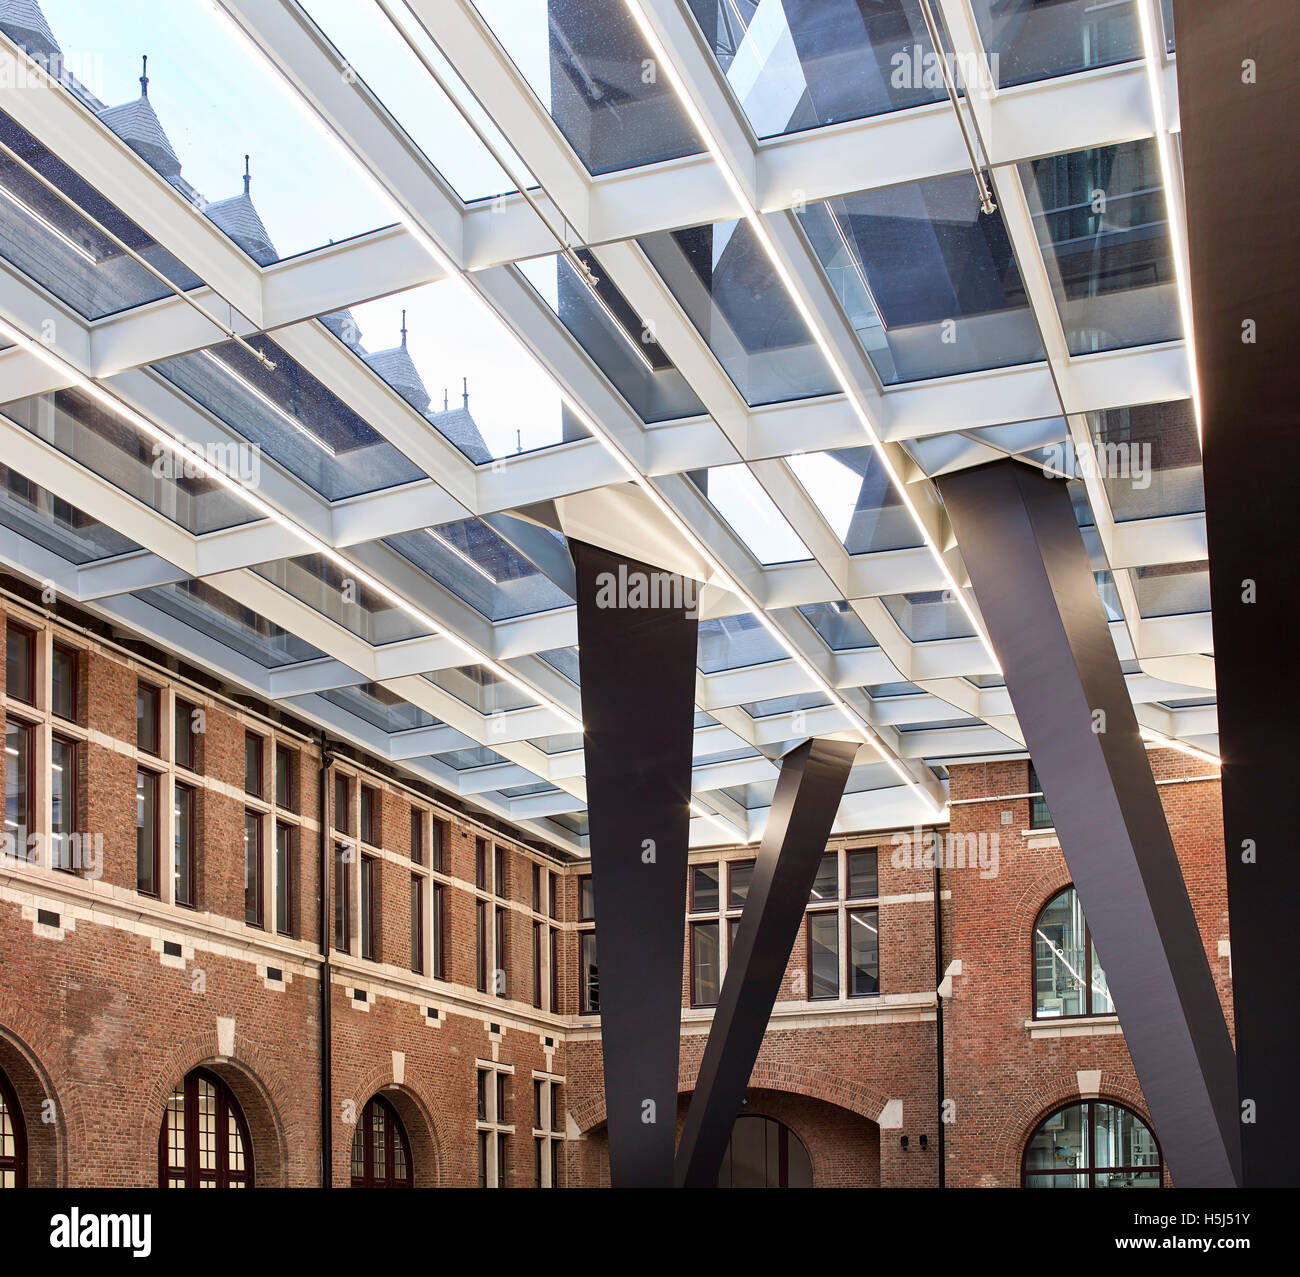 Dettaglio del cortile centrale. Casa porta ad Anversa, Belgio. Architetto: Zaha Hadid Architects, 2016. Foto Stock